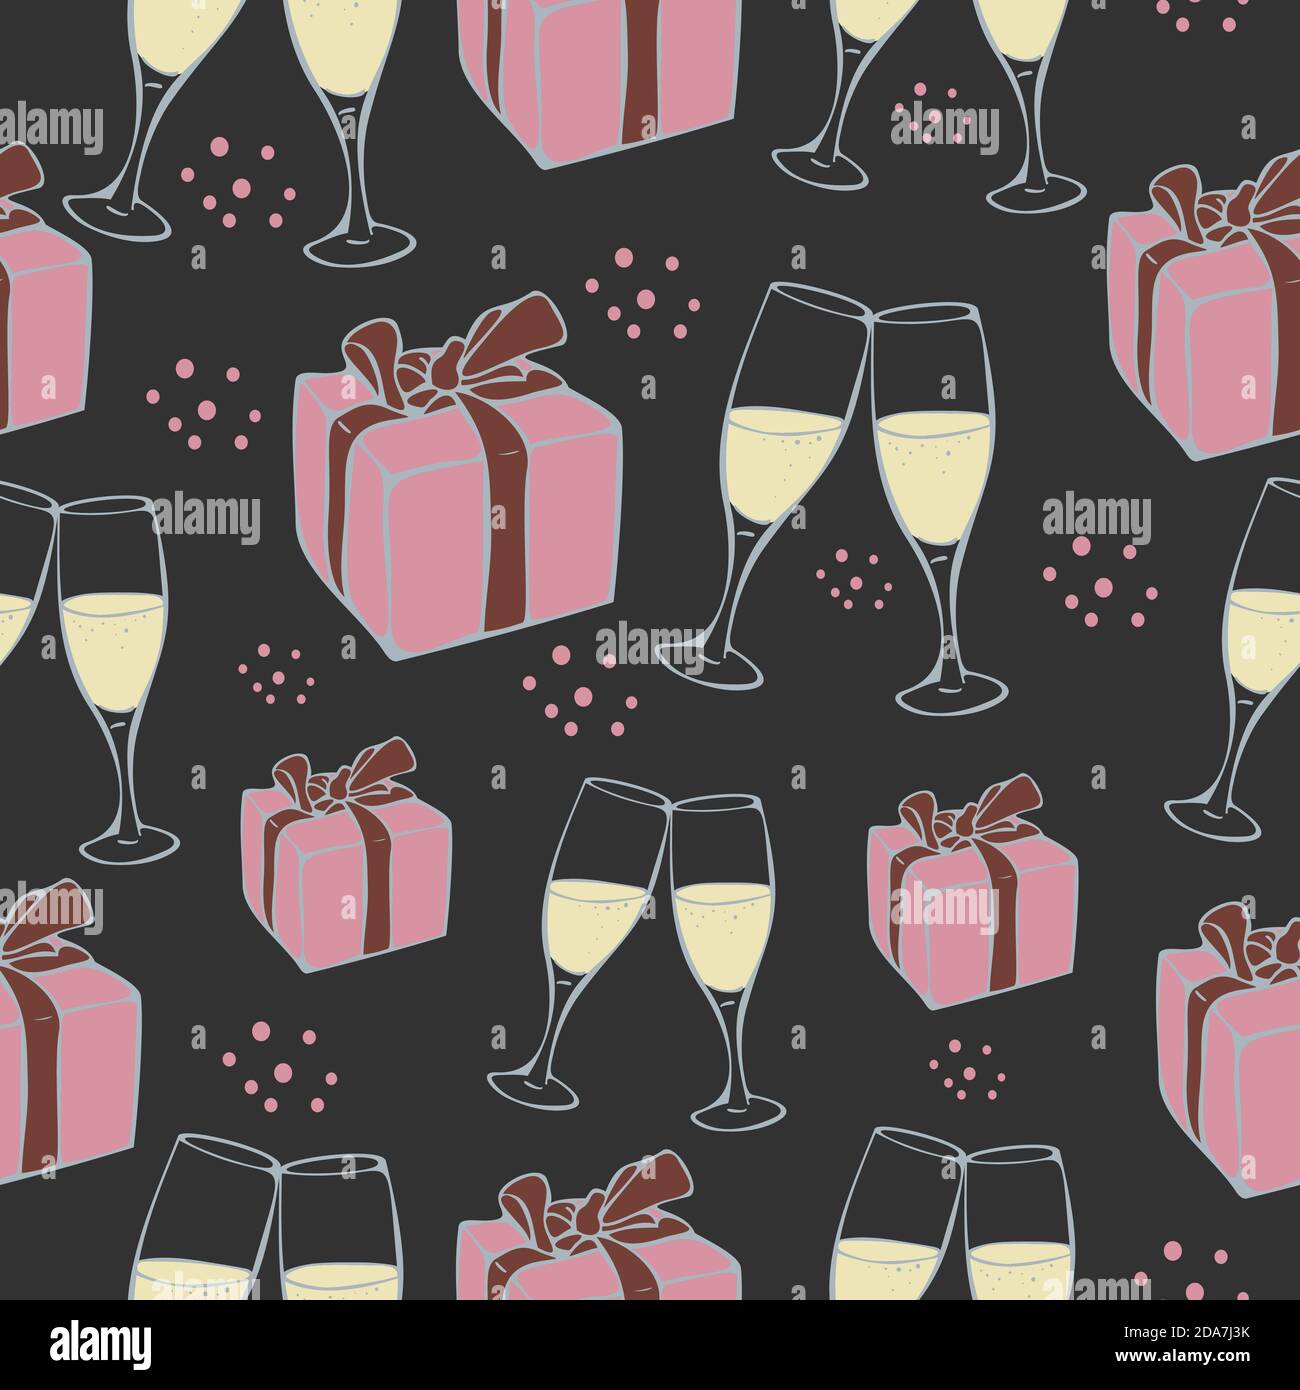 Vektor nahtlose Muster mit Geschenkboxen und Champagner-Gläser auf einem dunklen Hintergrund. Geschenkdesign. Stock Vektor